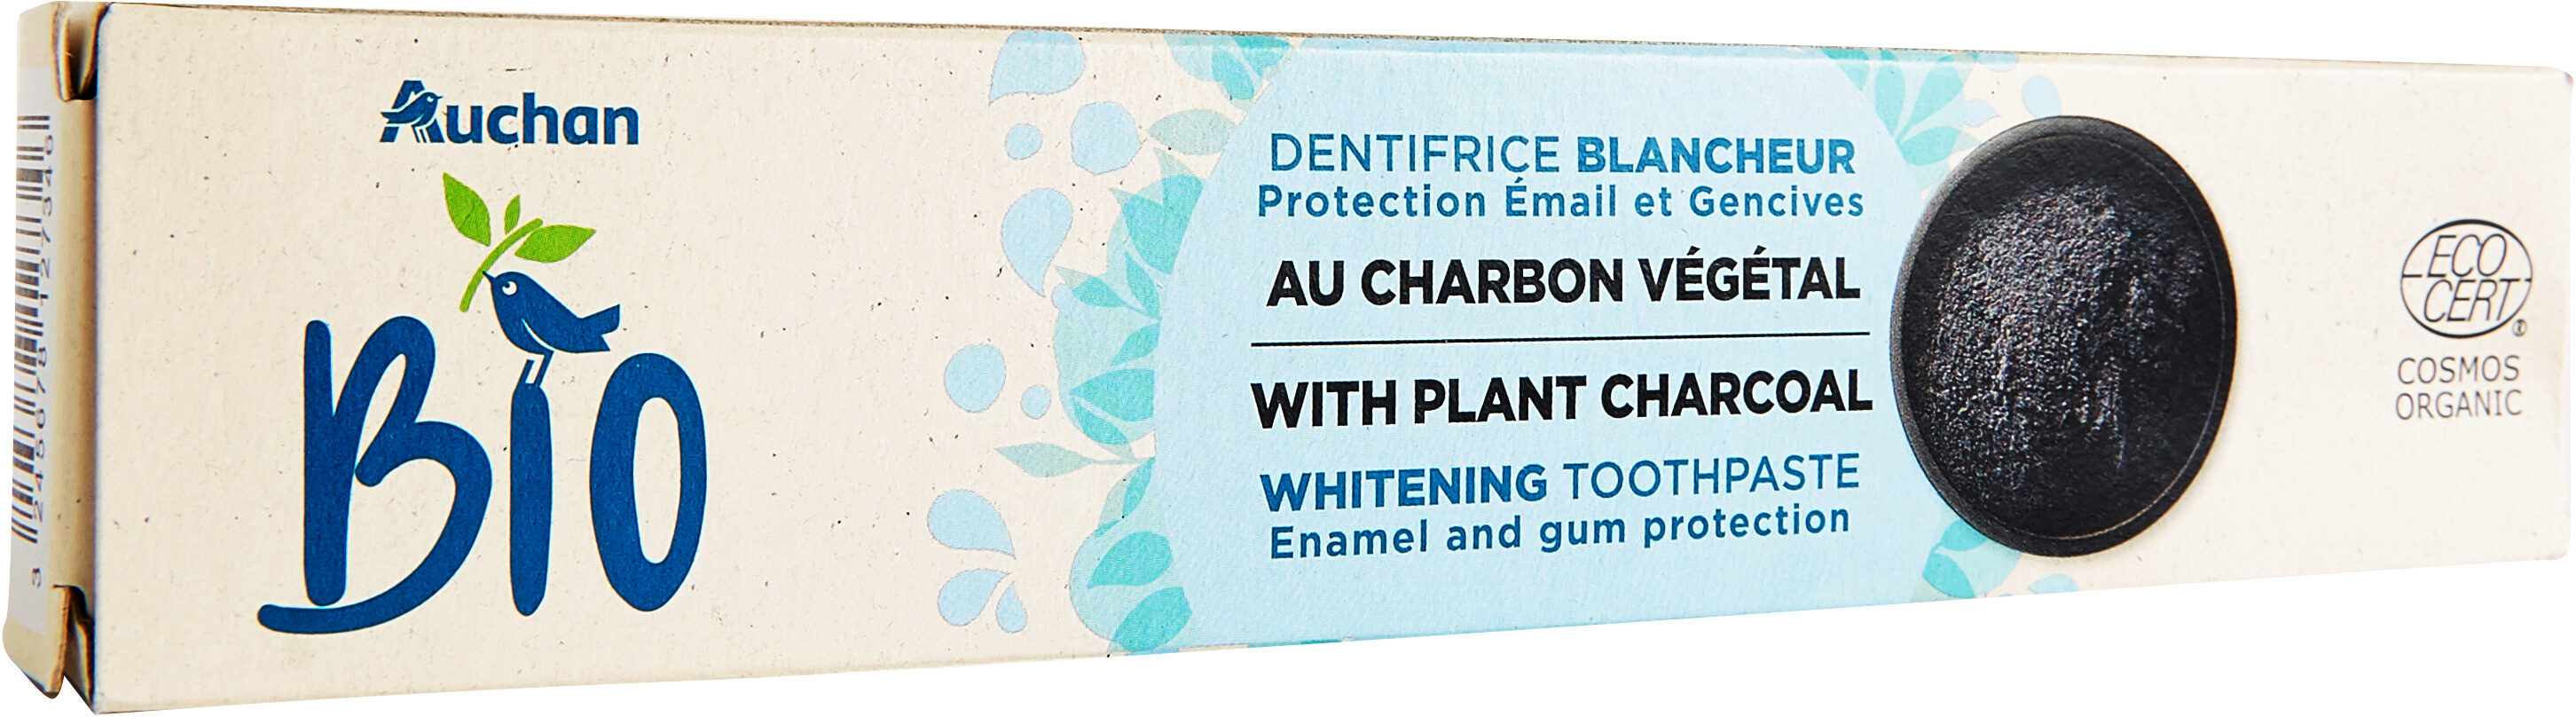 Dentifrice blancheur au charbon vegetal - Produto - fr